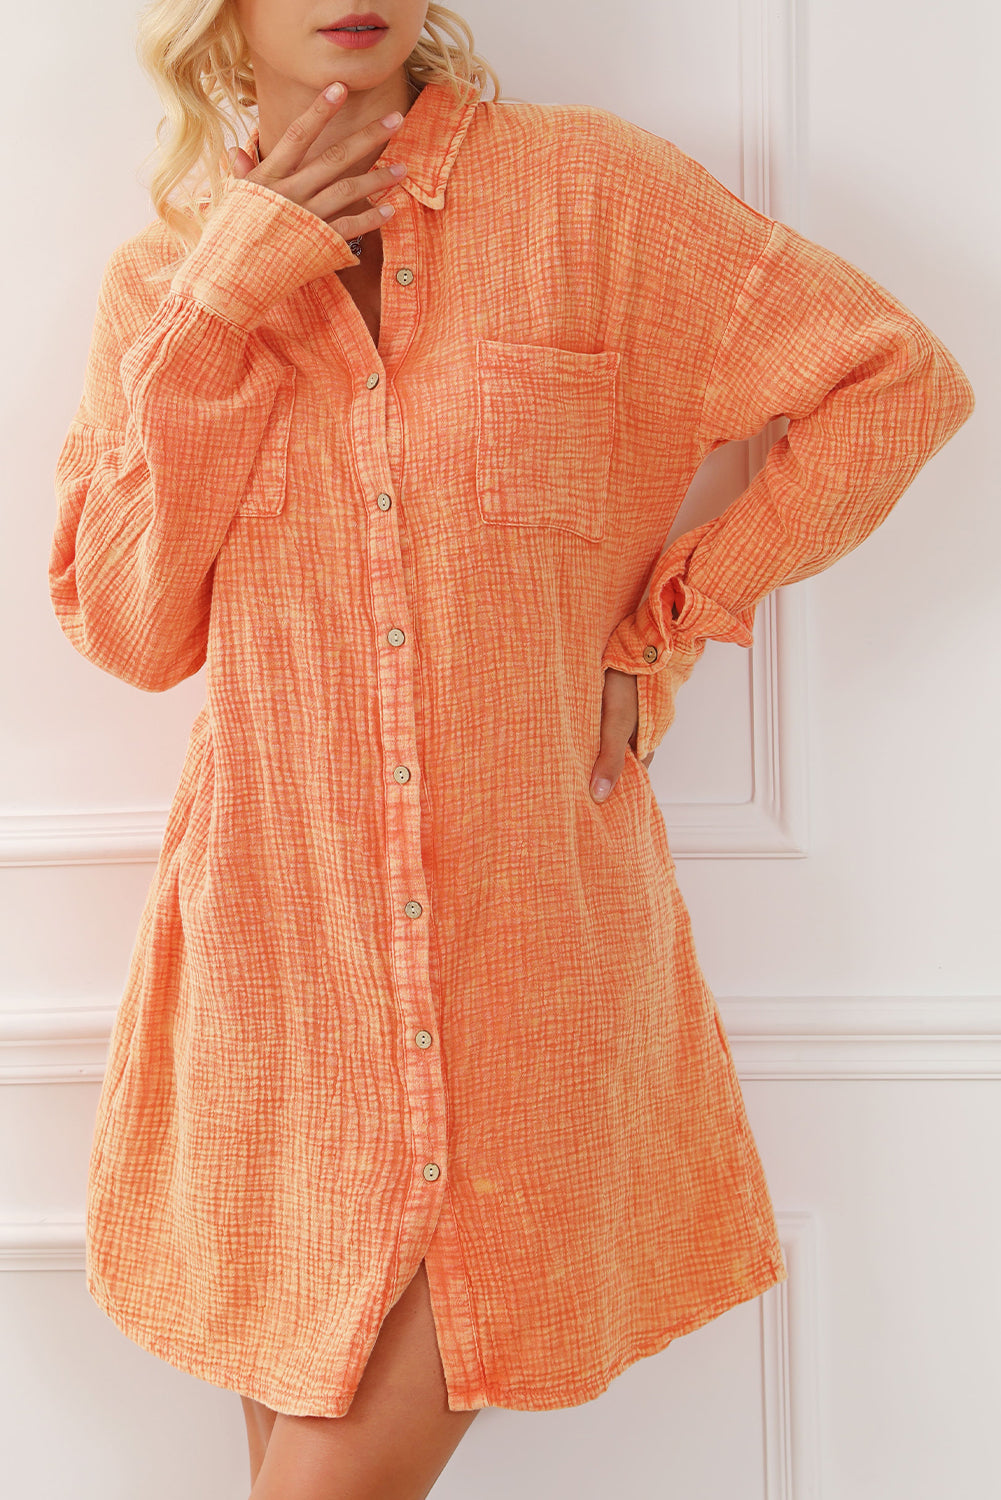 Narančasta velika košulja s dva džepa na prsima, naborana